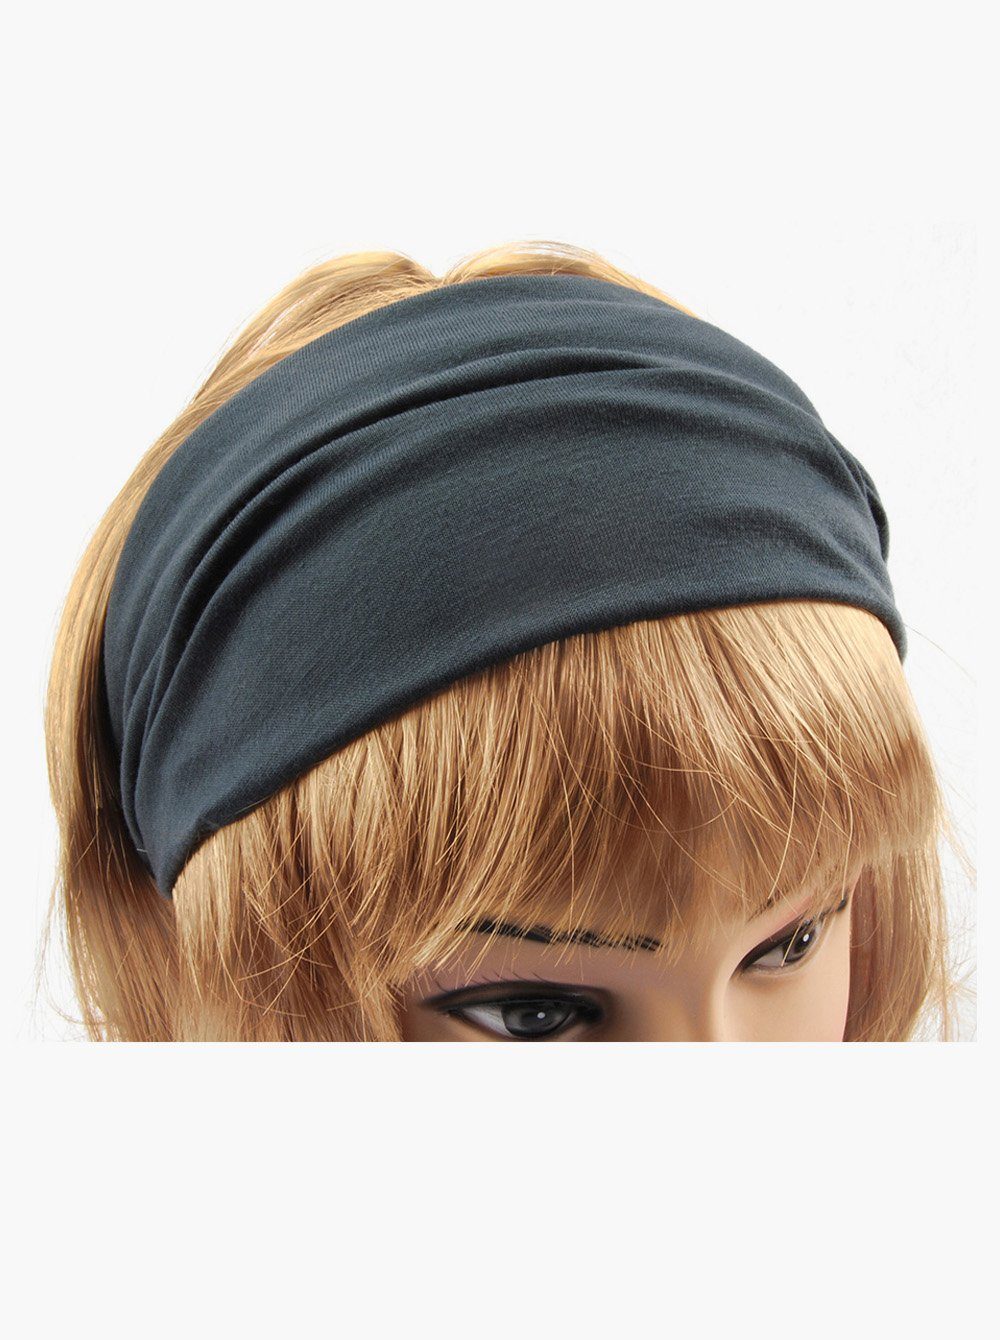 für Yoga Haarband Damen Sport Hairband Kopfband, und Dunkelgrau axy Stirnband Haarband